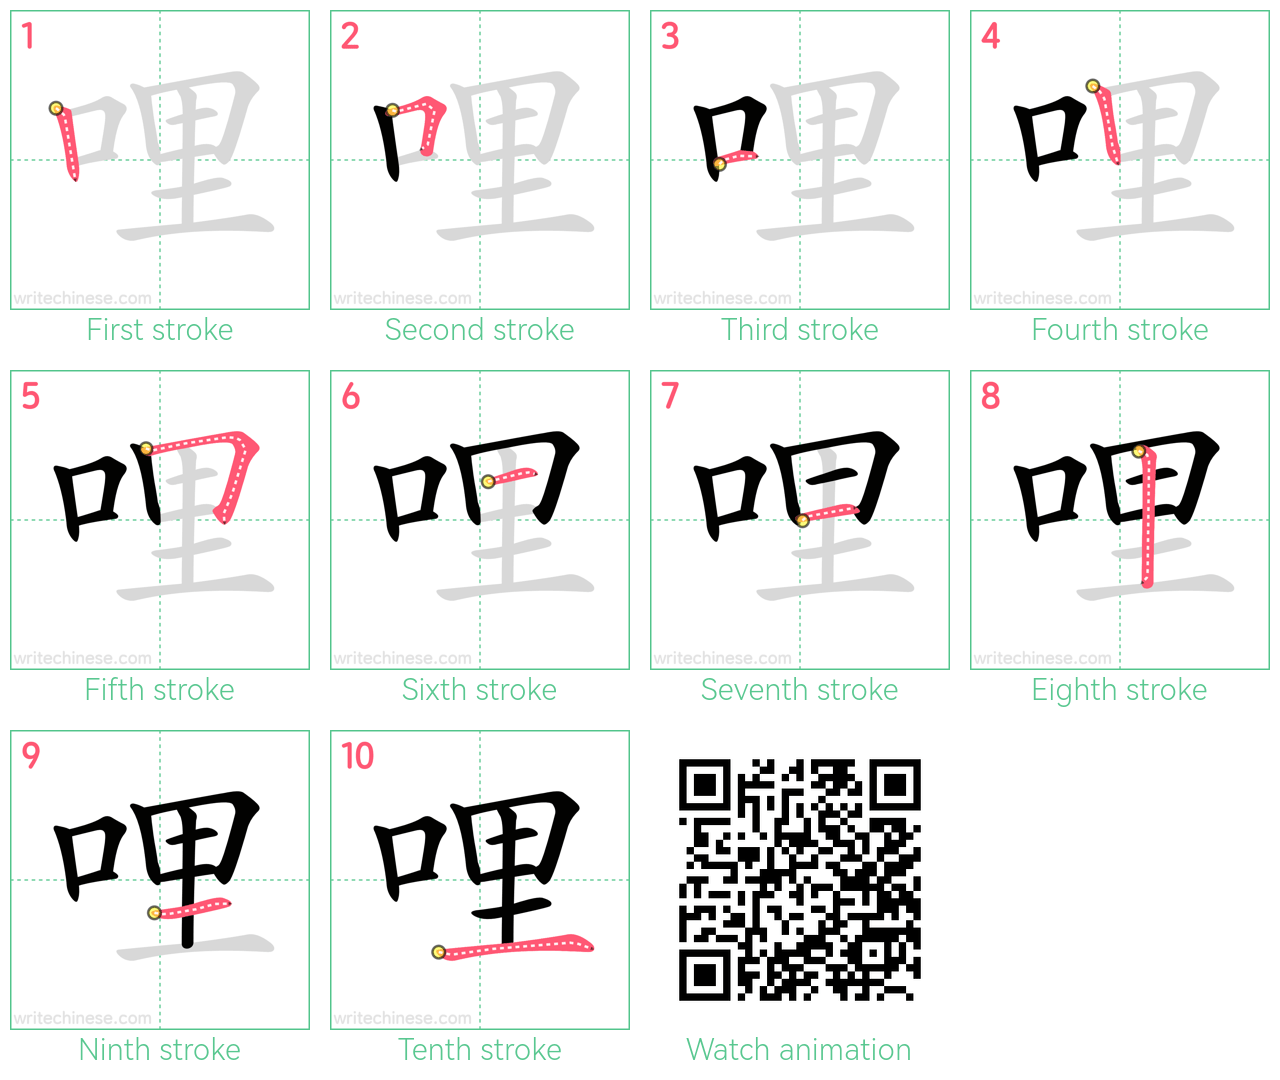 哩 step-by-step stroke order diagrams